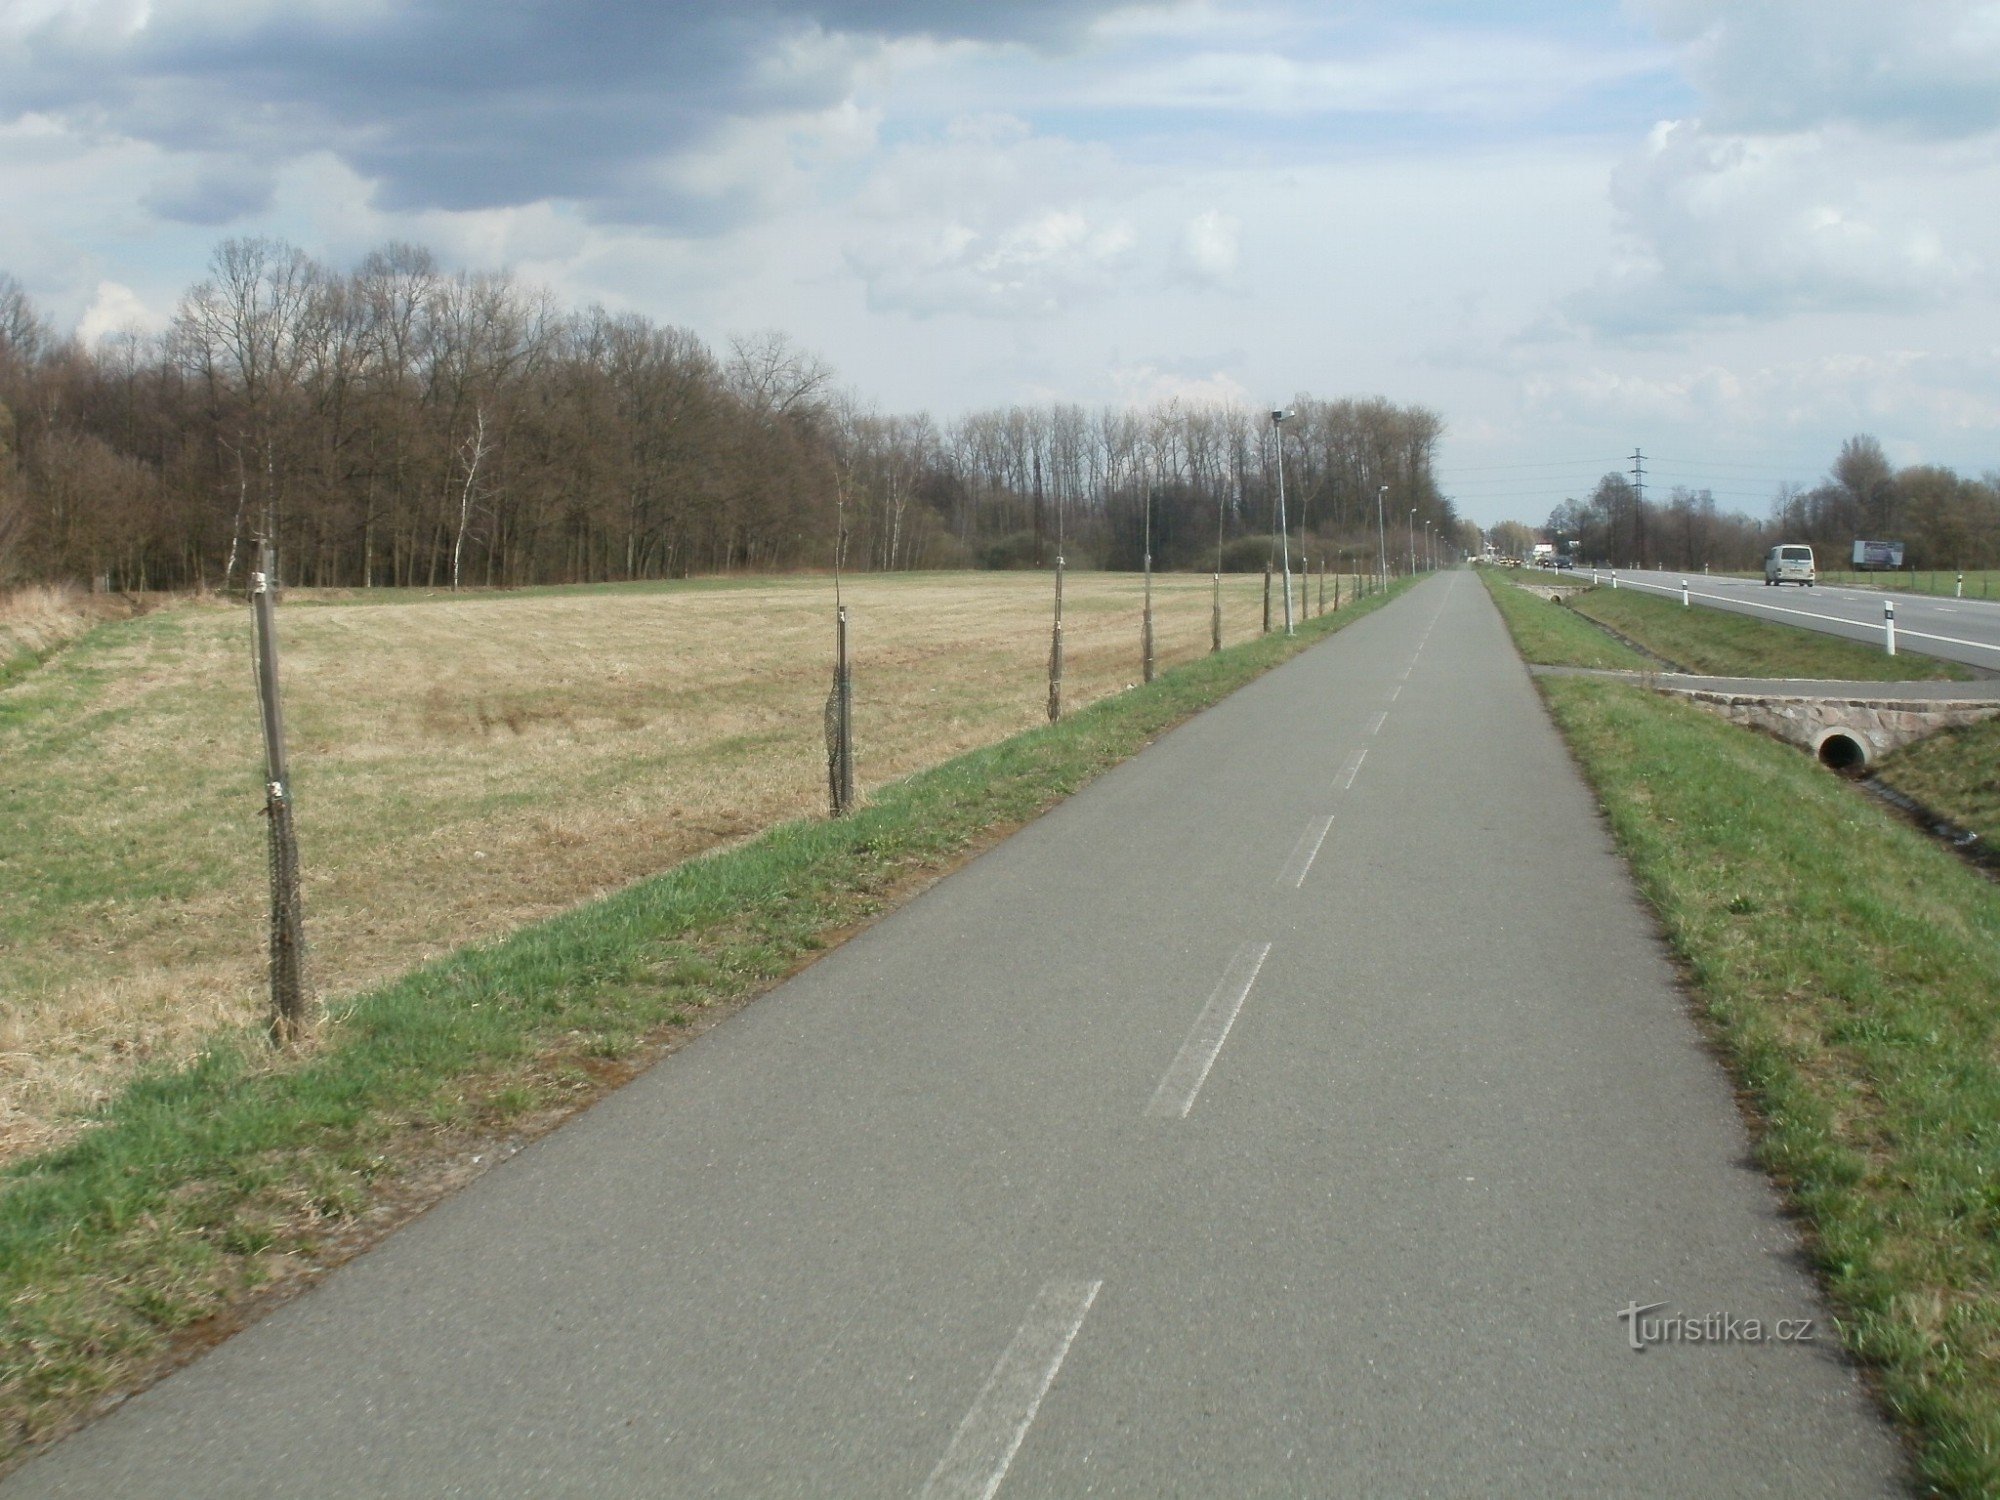 cycle path near Týniště nad Orlicí